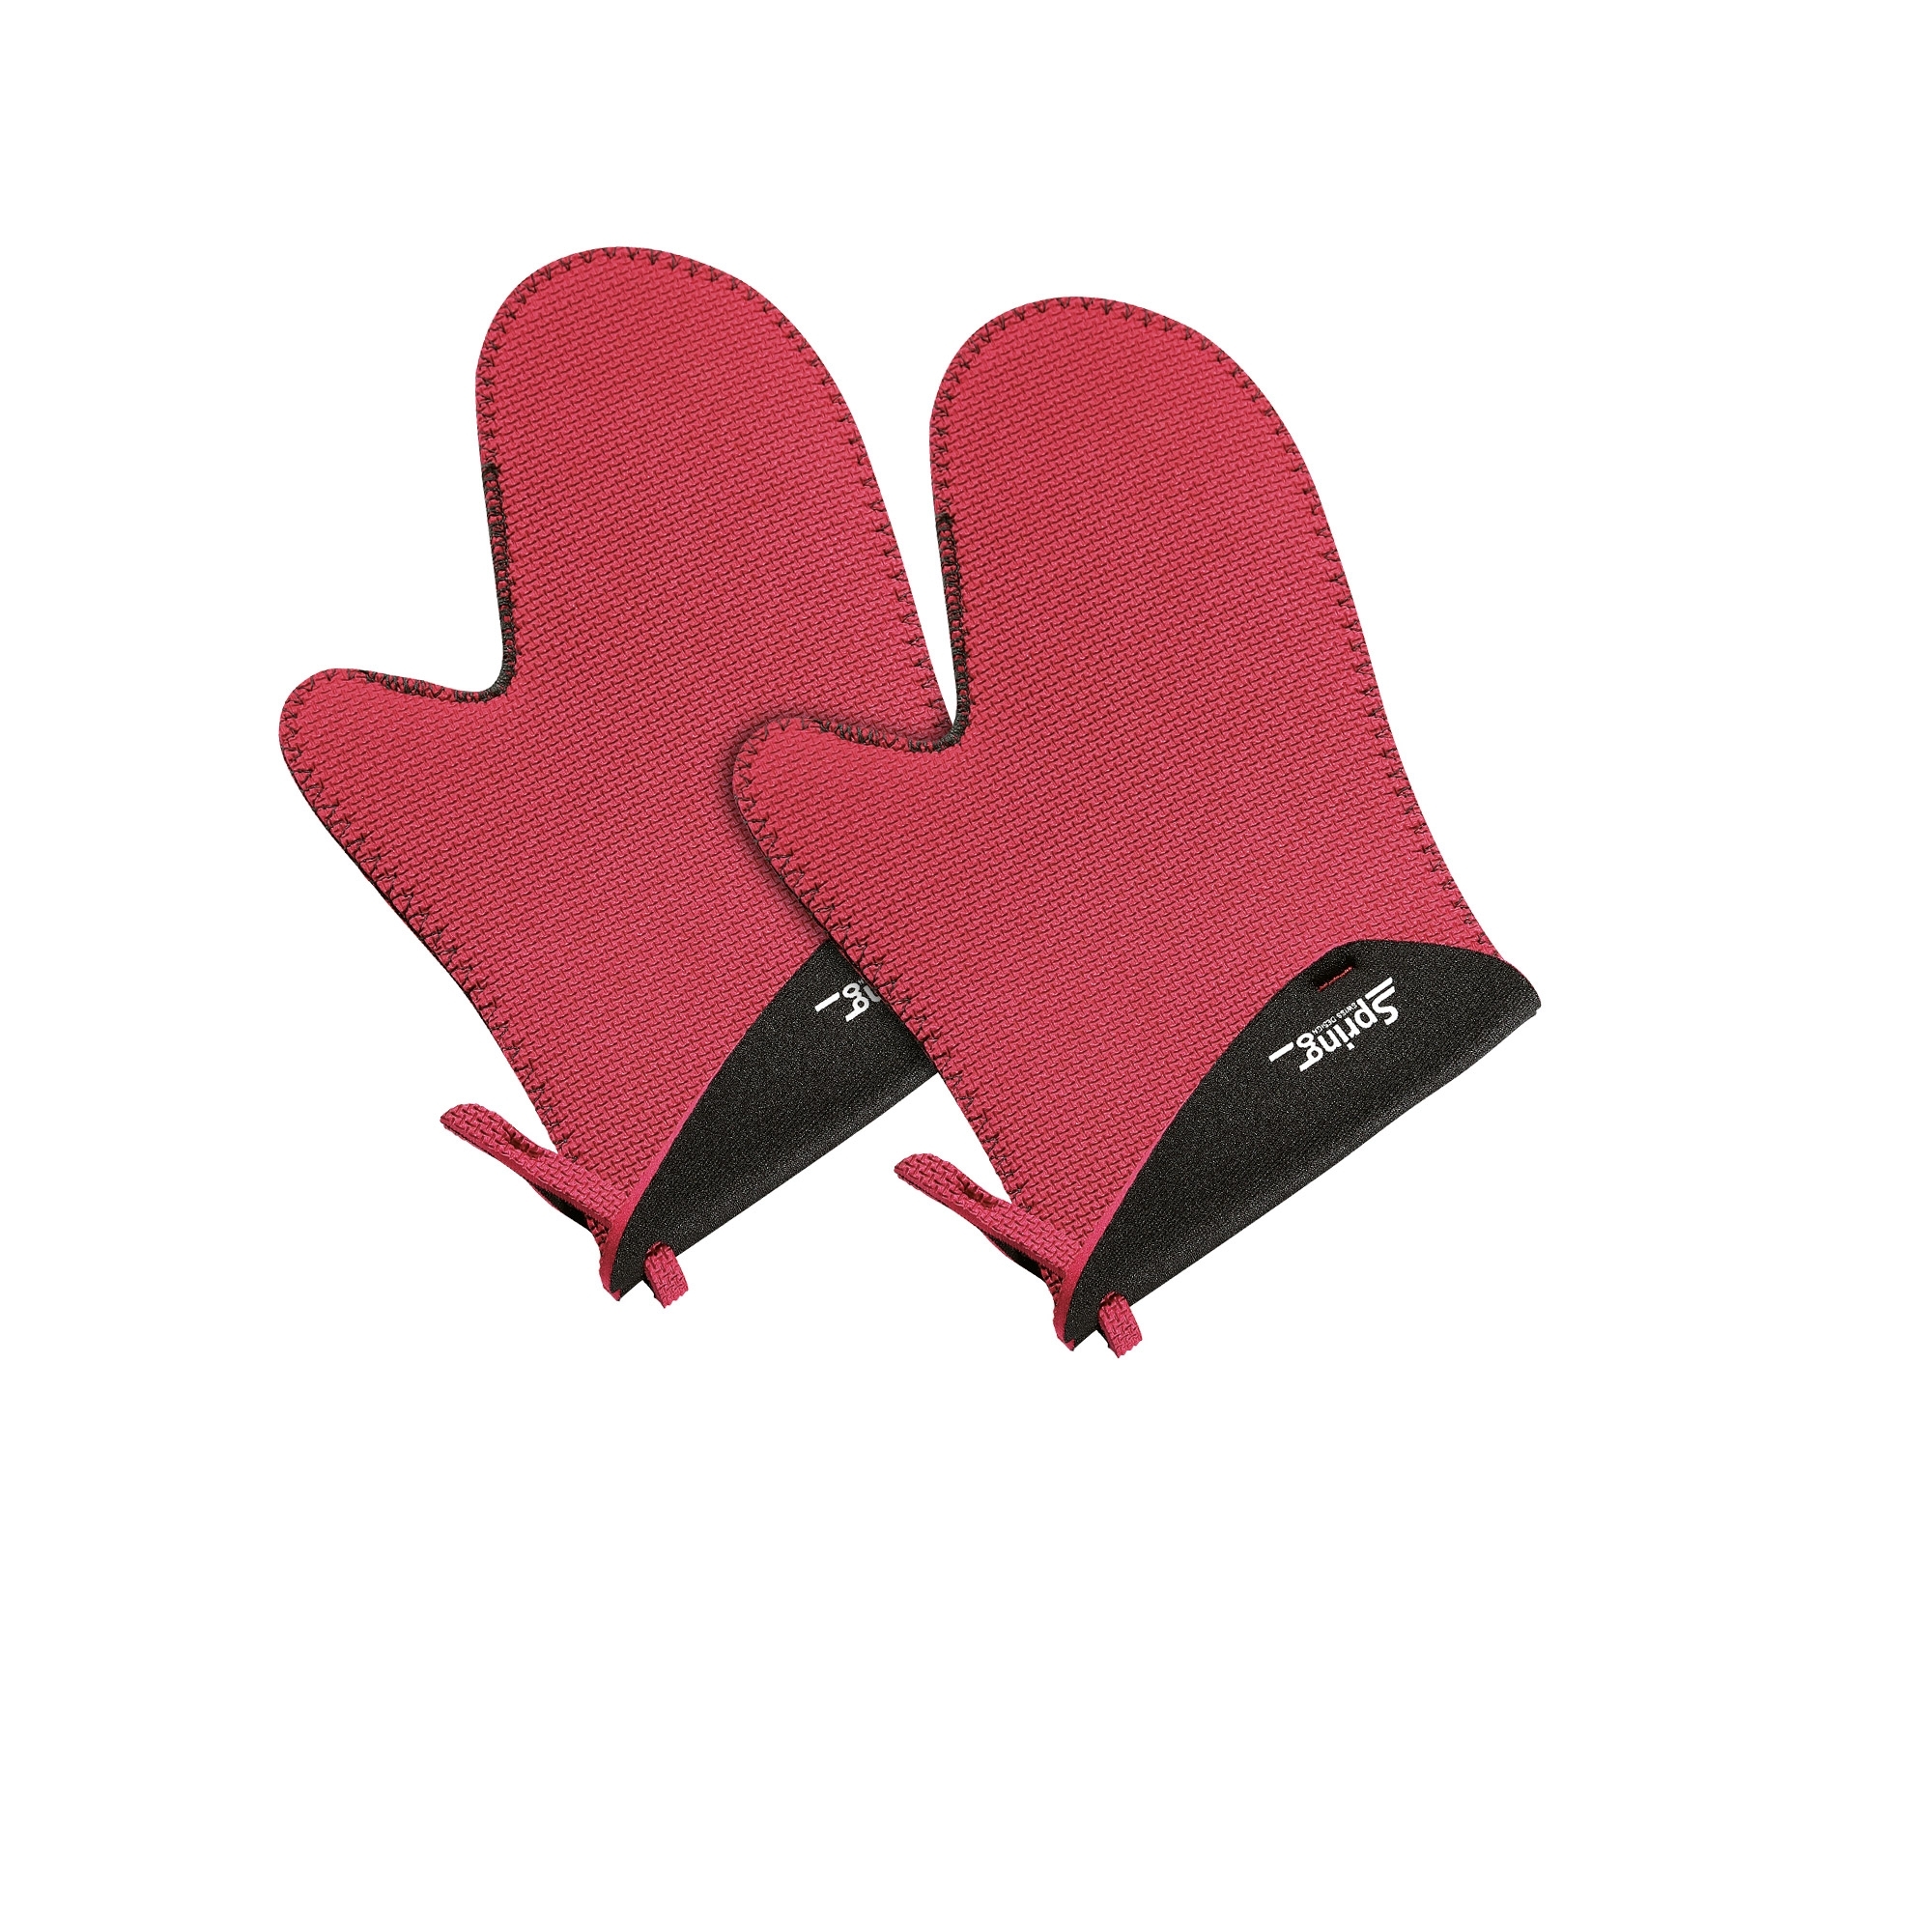 Spring - Grips Handschuh kurz - rot, schwarz